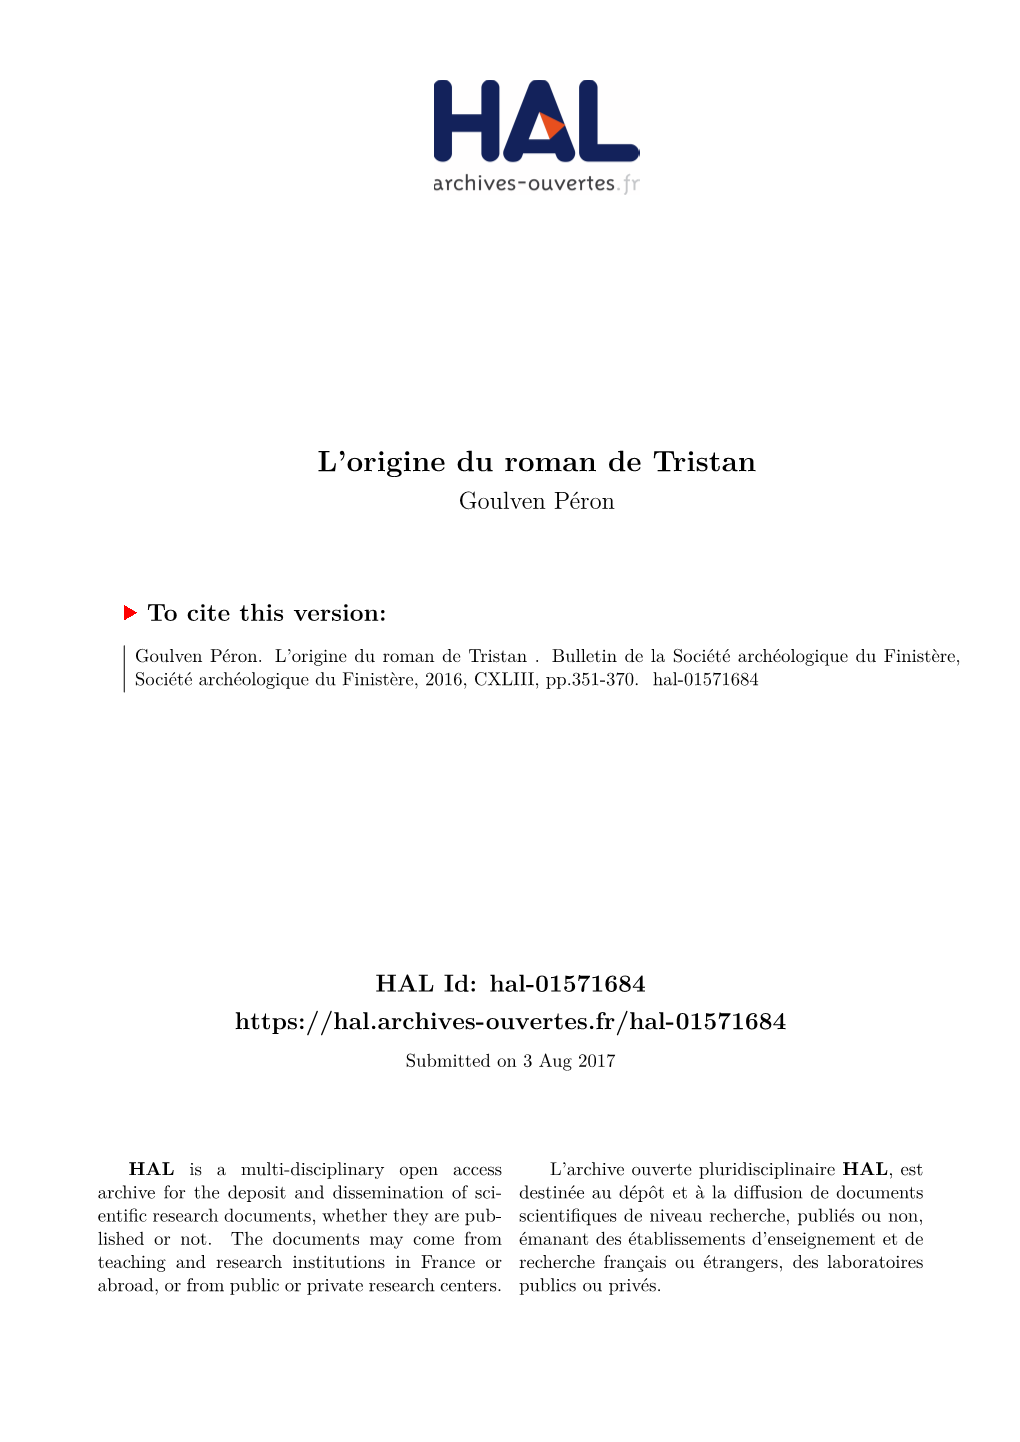 L'origine Du Roman De Tristan », Histoire Et Patrimoine, Société Archéologique Du Finistère, Tome CXLIII, Année 2015, Mars 2016, P.351-370